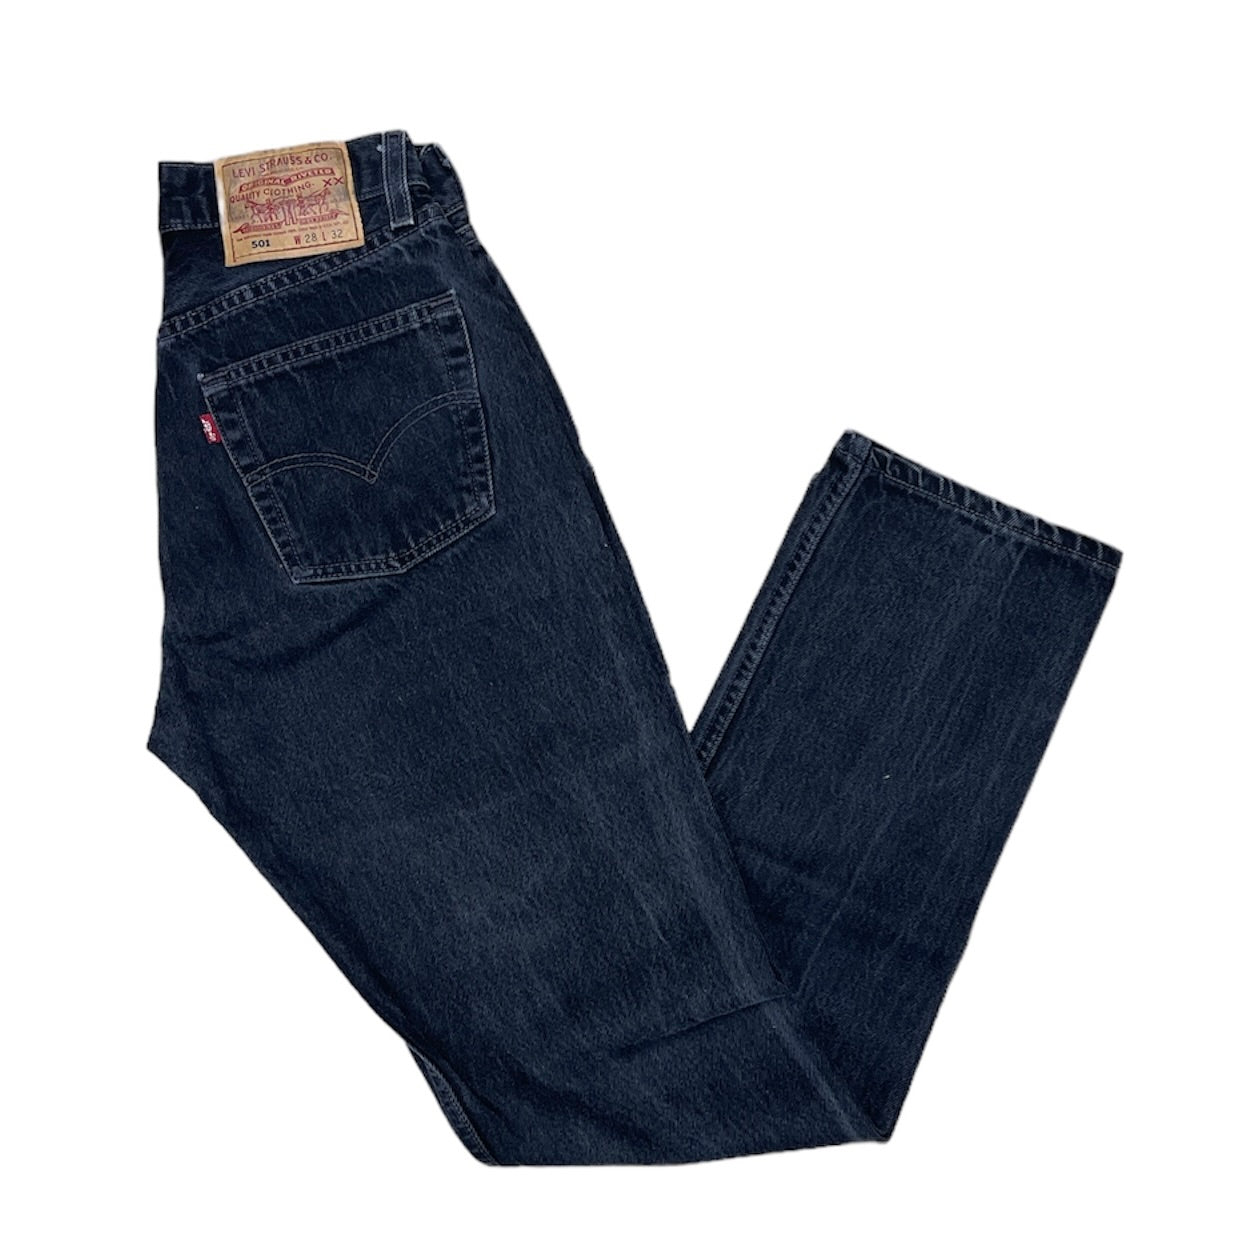 Vintage Levis 501 Vintage Black Jeans (W28/L32)